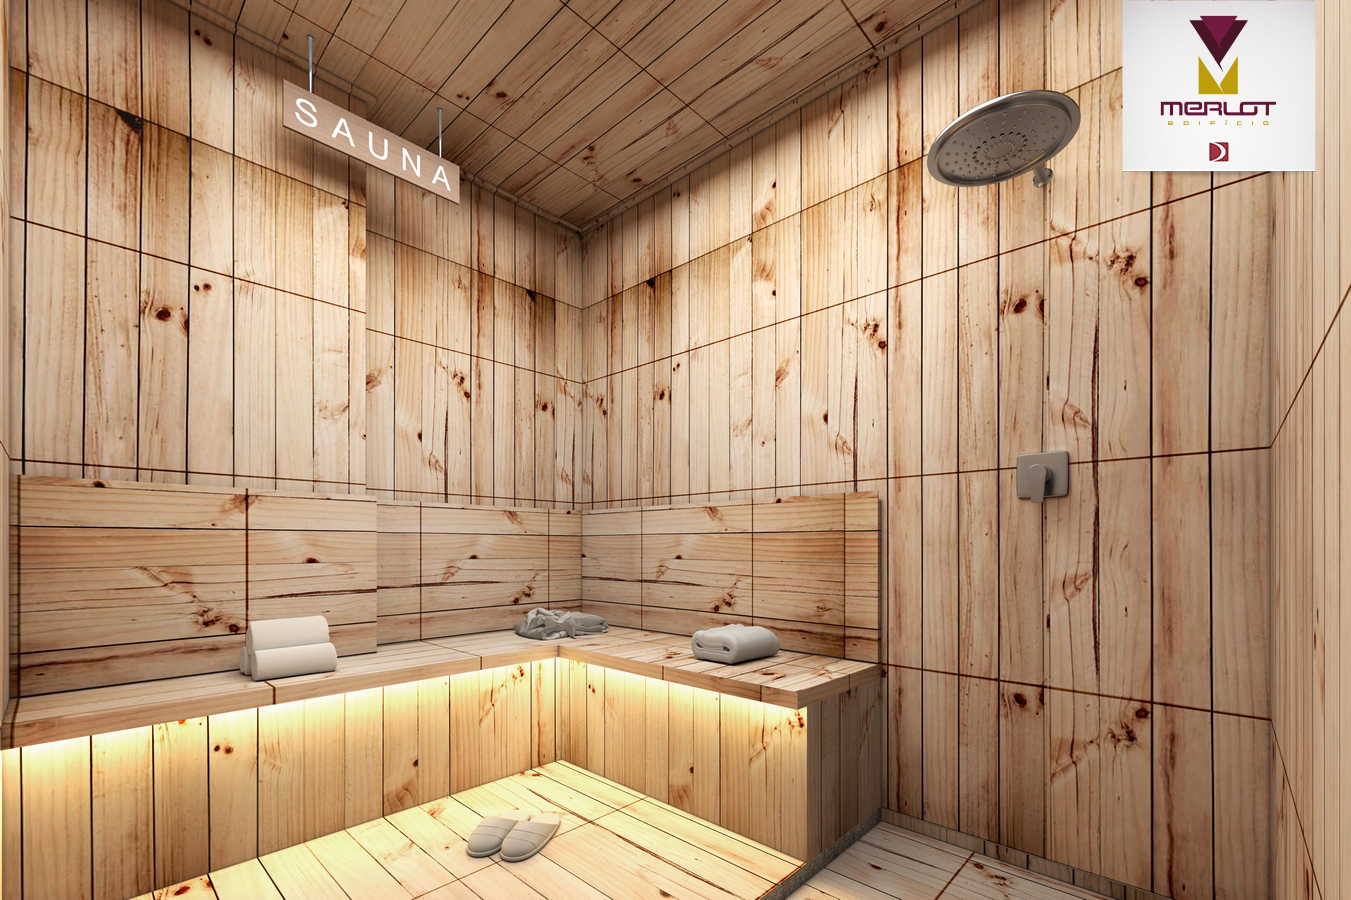 07_1merlot sauna (Cópia)